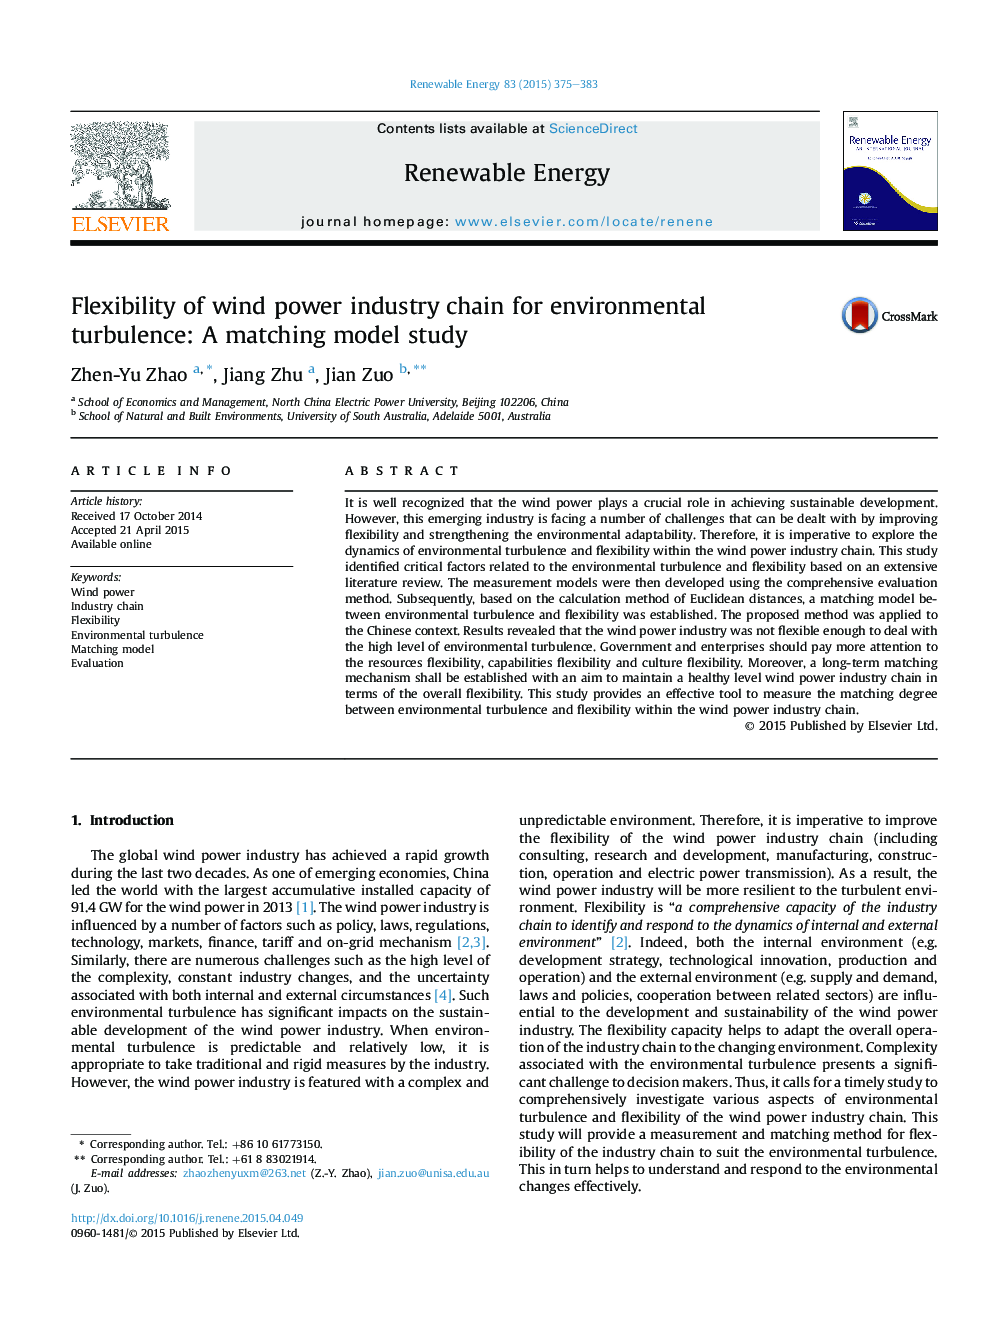 انعطاف پذیری زنجیره صنعت انرژی باد برای آشفتگی های محیطی: یک مطالعه مدل سازگاری 